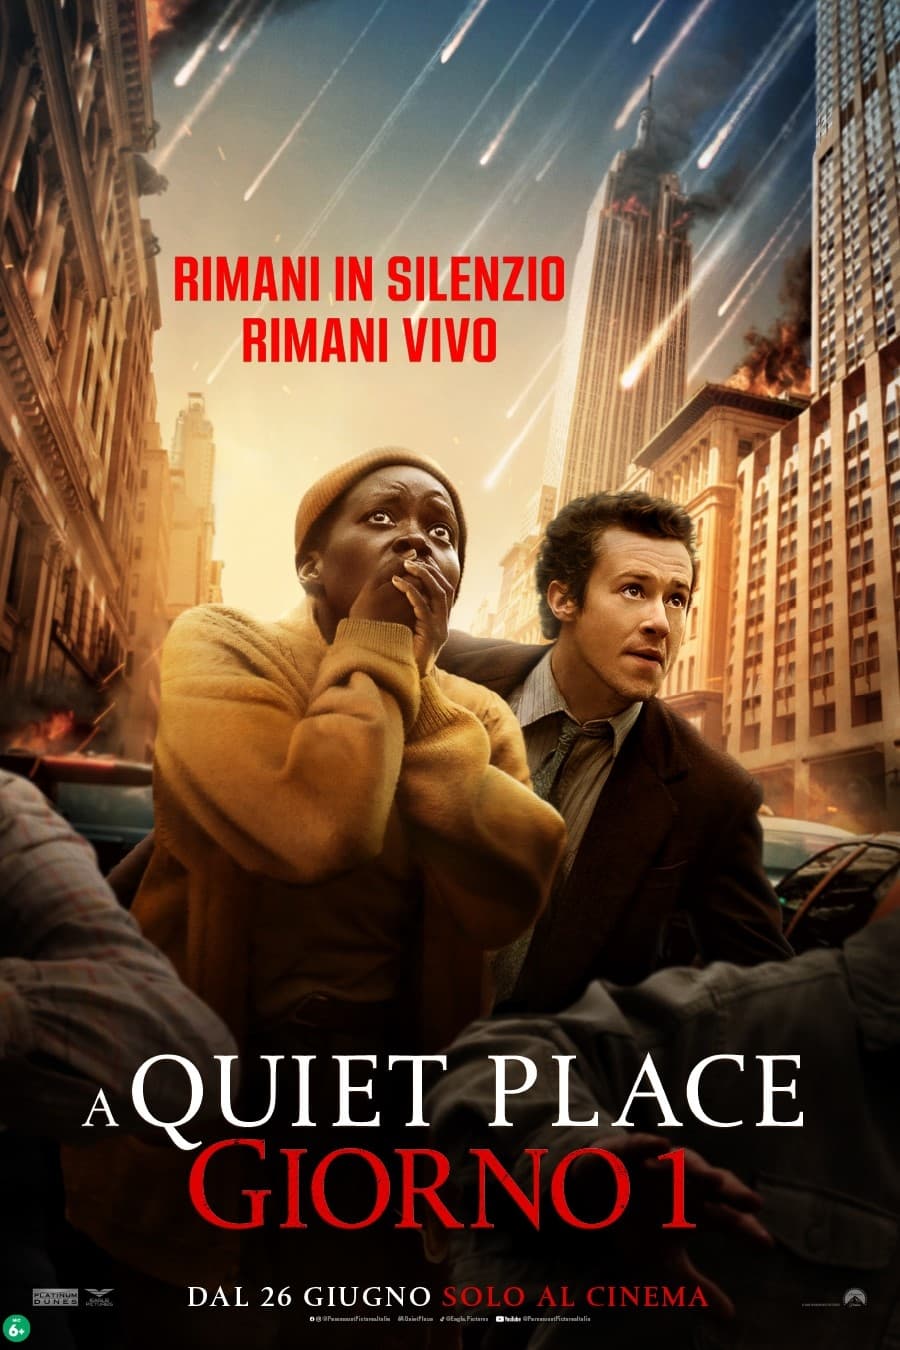 A Quiet Place - Giorno 1 film